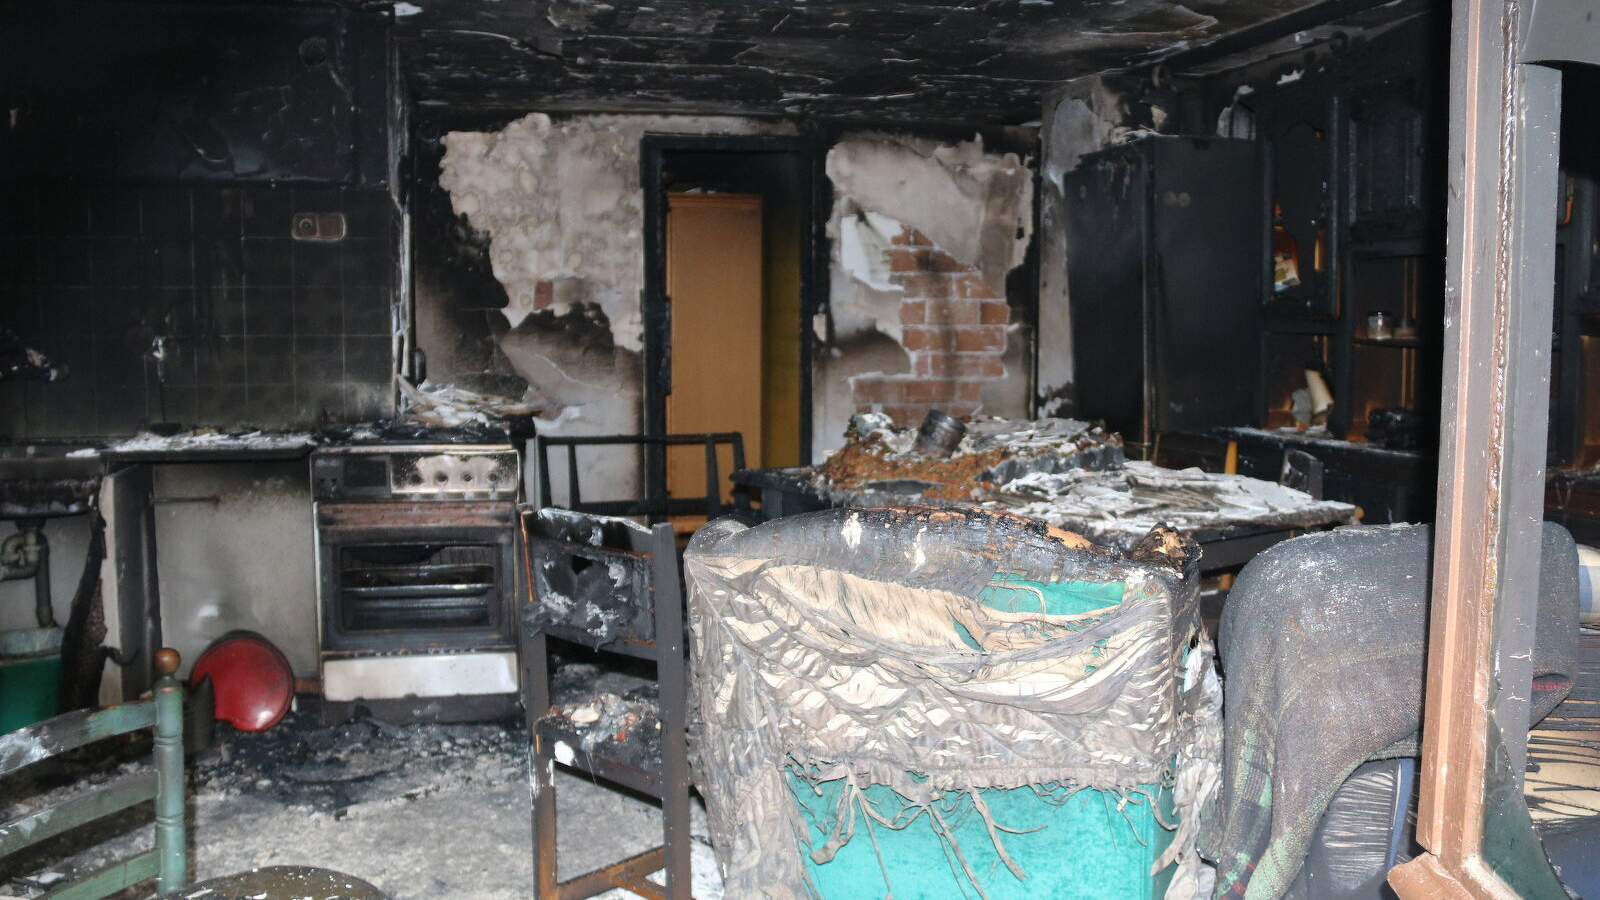 Menjador cremat per l'incendi a una casa de Capmany (Alt Empordà) el 8 de novembre del 2019